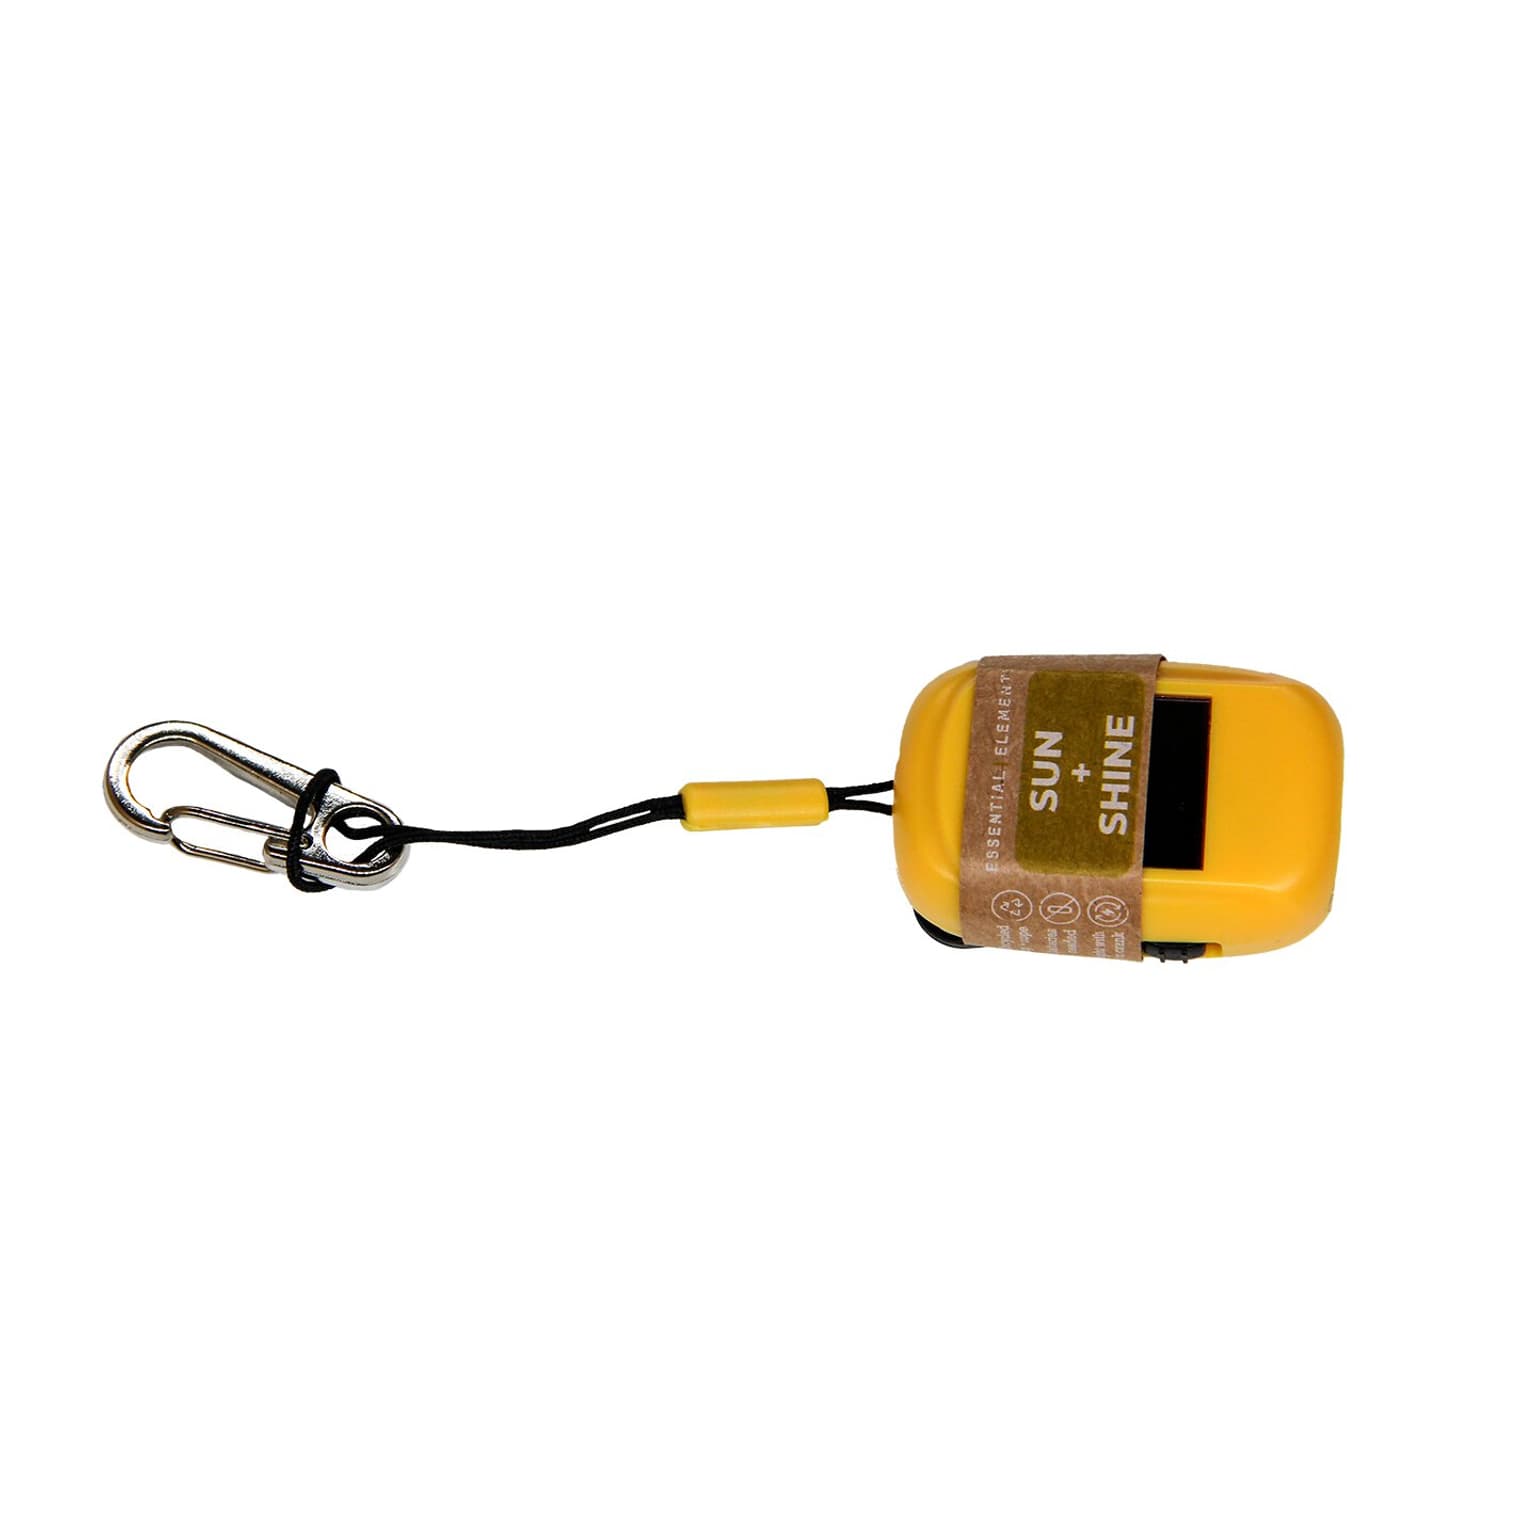 Essential Elements Essential Elements Mini Taschenlampe Recycled inkl. Karabiner Taschenlampe giallo 2